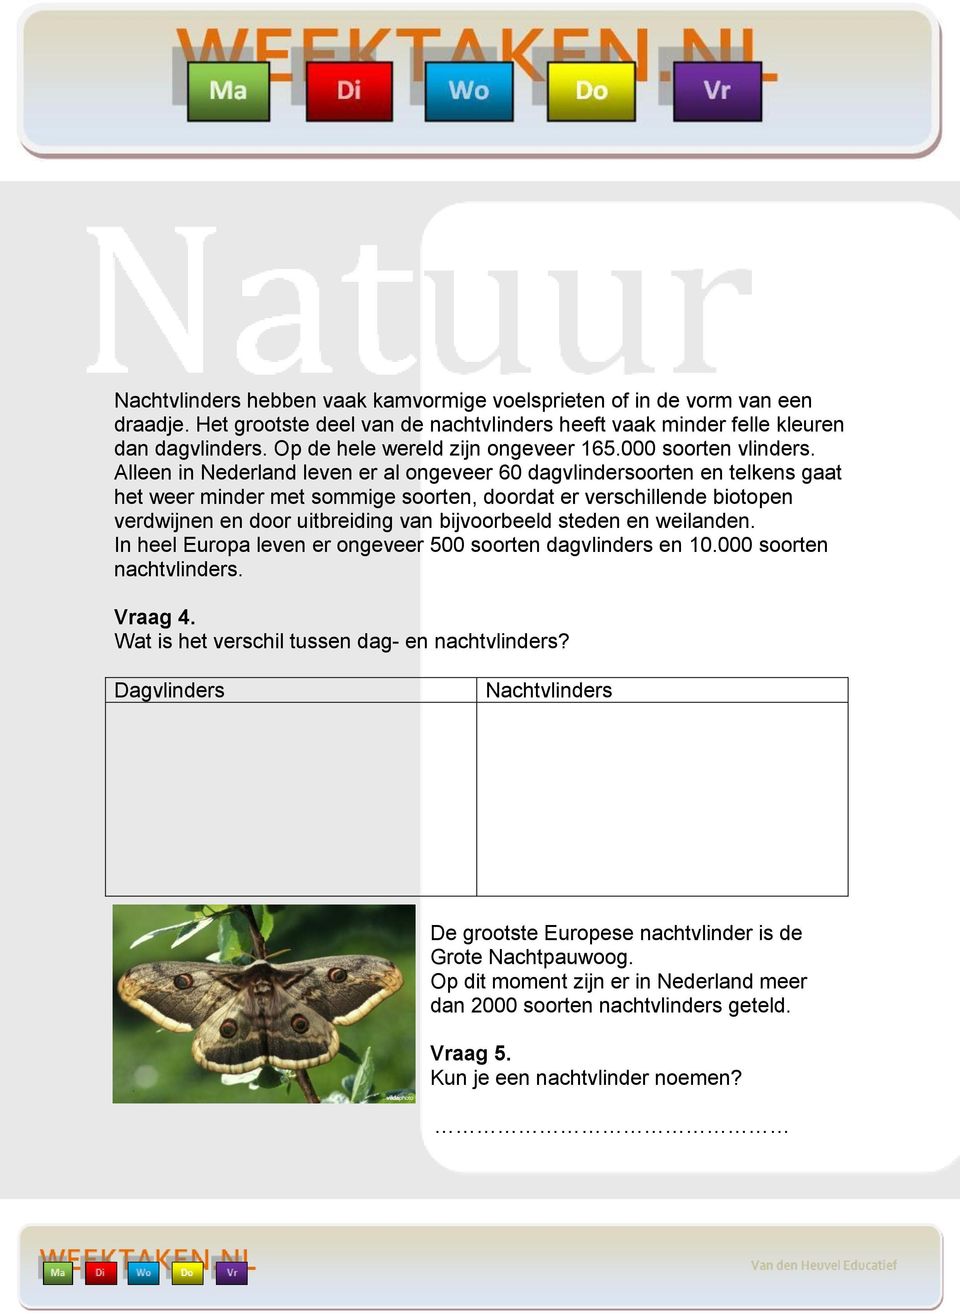 Alleen in Nederland leven er al ongeveer 60 dagvlindersoorten en telkens gaat het weer minder met sommige soorten, doordat er verschillende biotopen verdwijnen en door uitbreiding van bijvoorbeeld